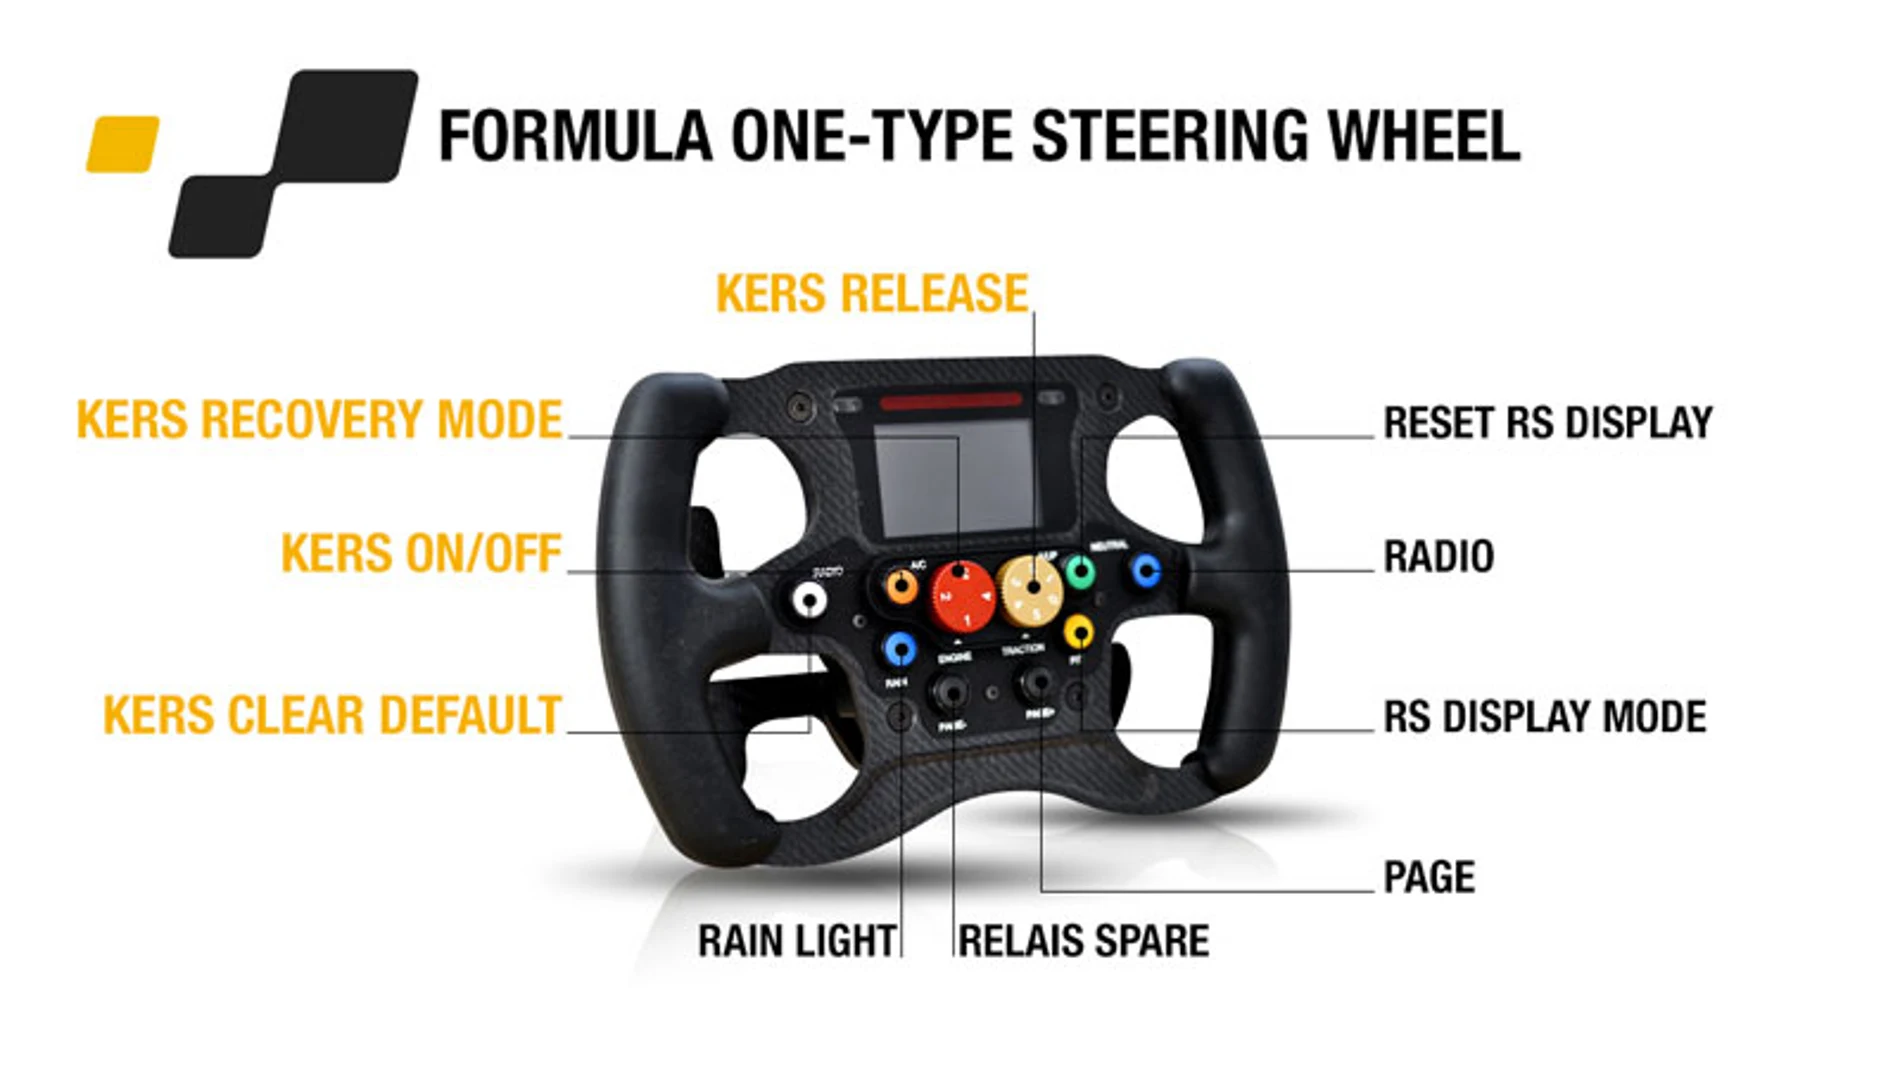 El volante es similar, aunque con menos botones, al que utilizan los coches de Fórmula 1.